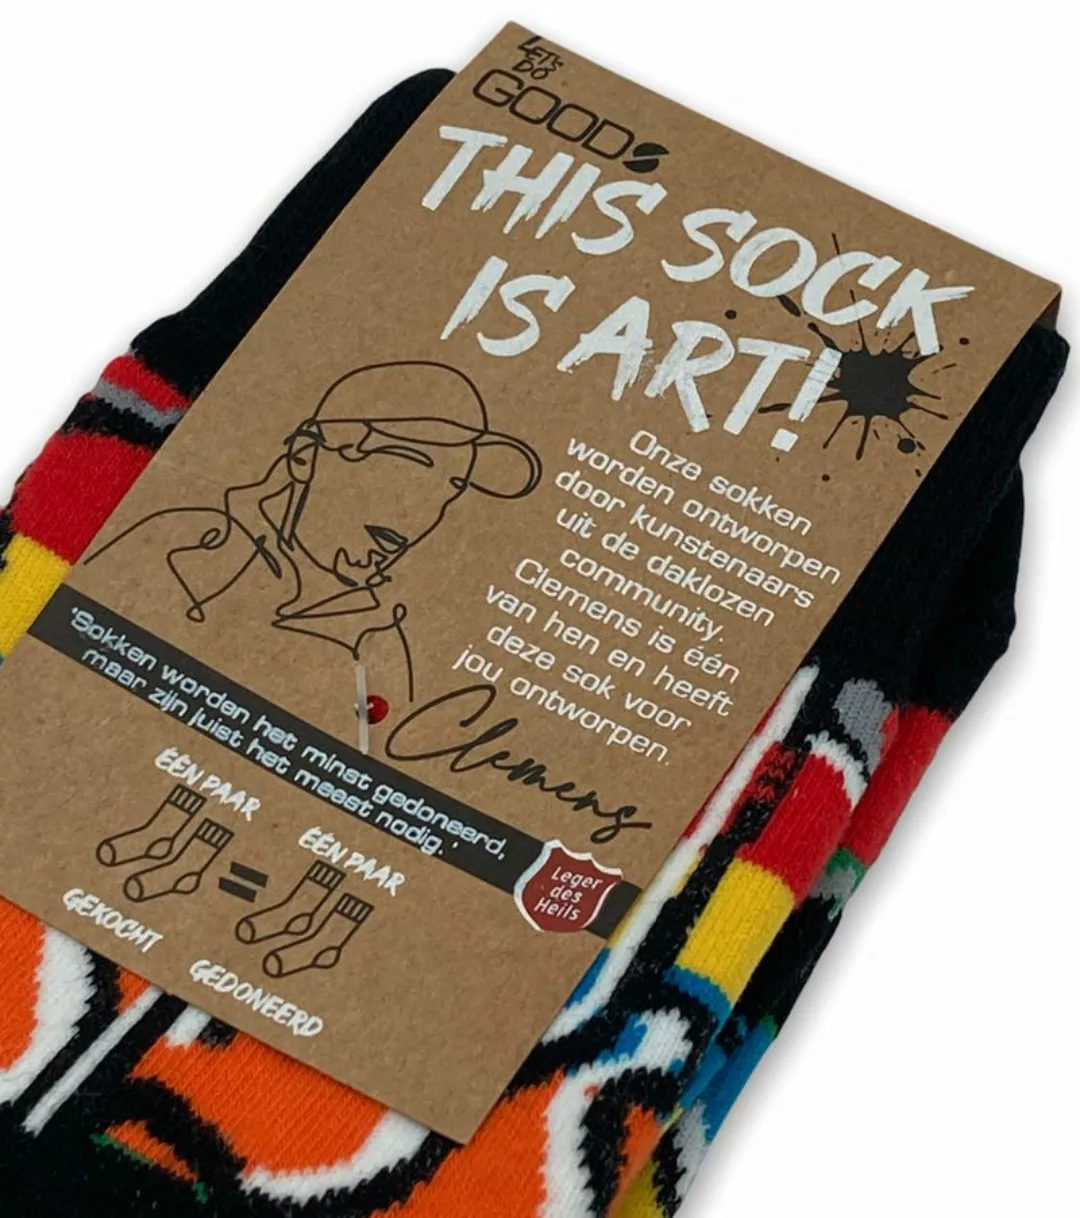 Let's Do Good Socken Clemens - Größe 41-46 günstig online kaufen